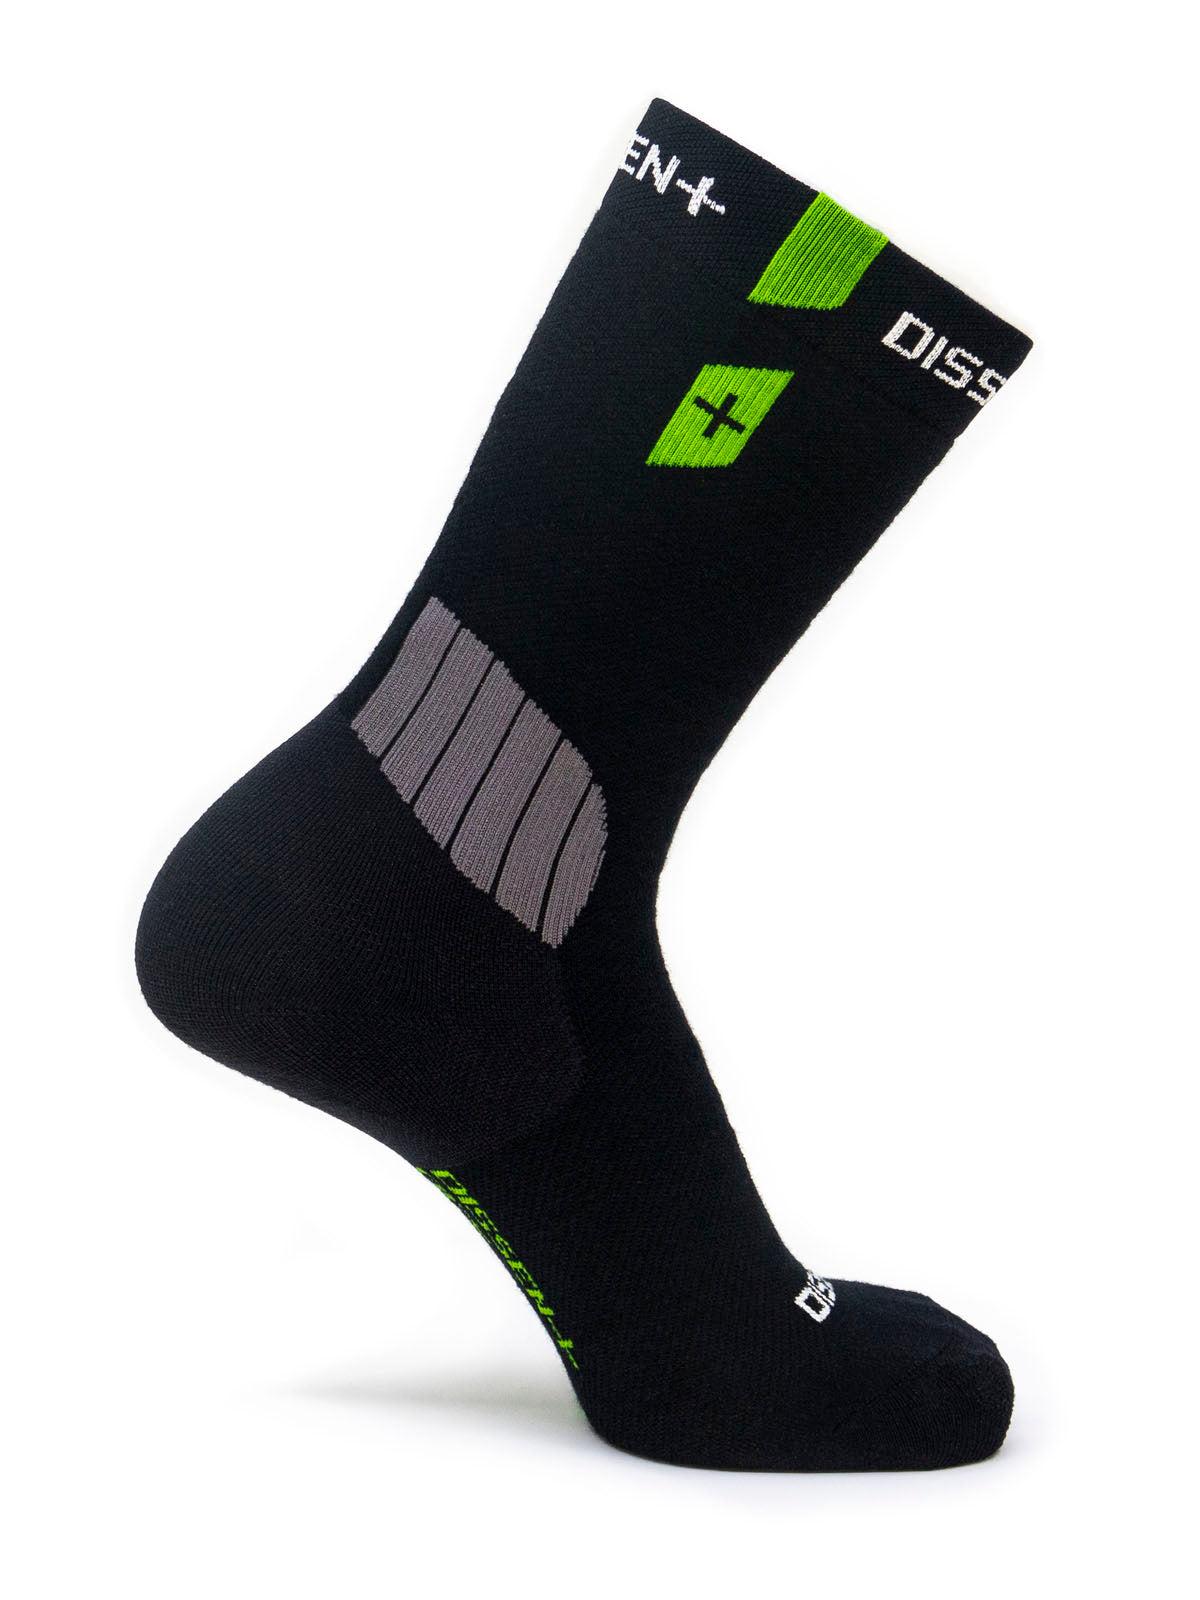 Stoic Merino Ski Socks Tech Heavy - Ski socks